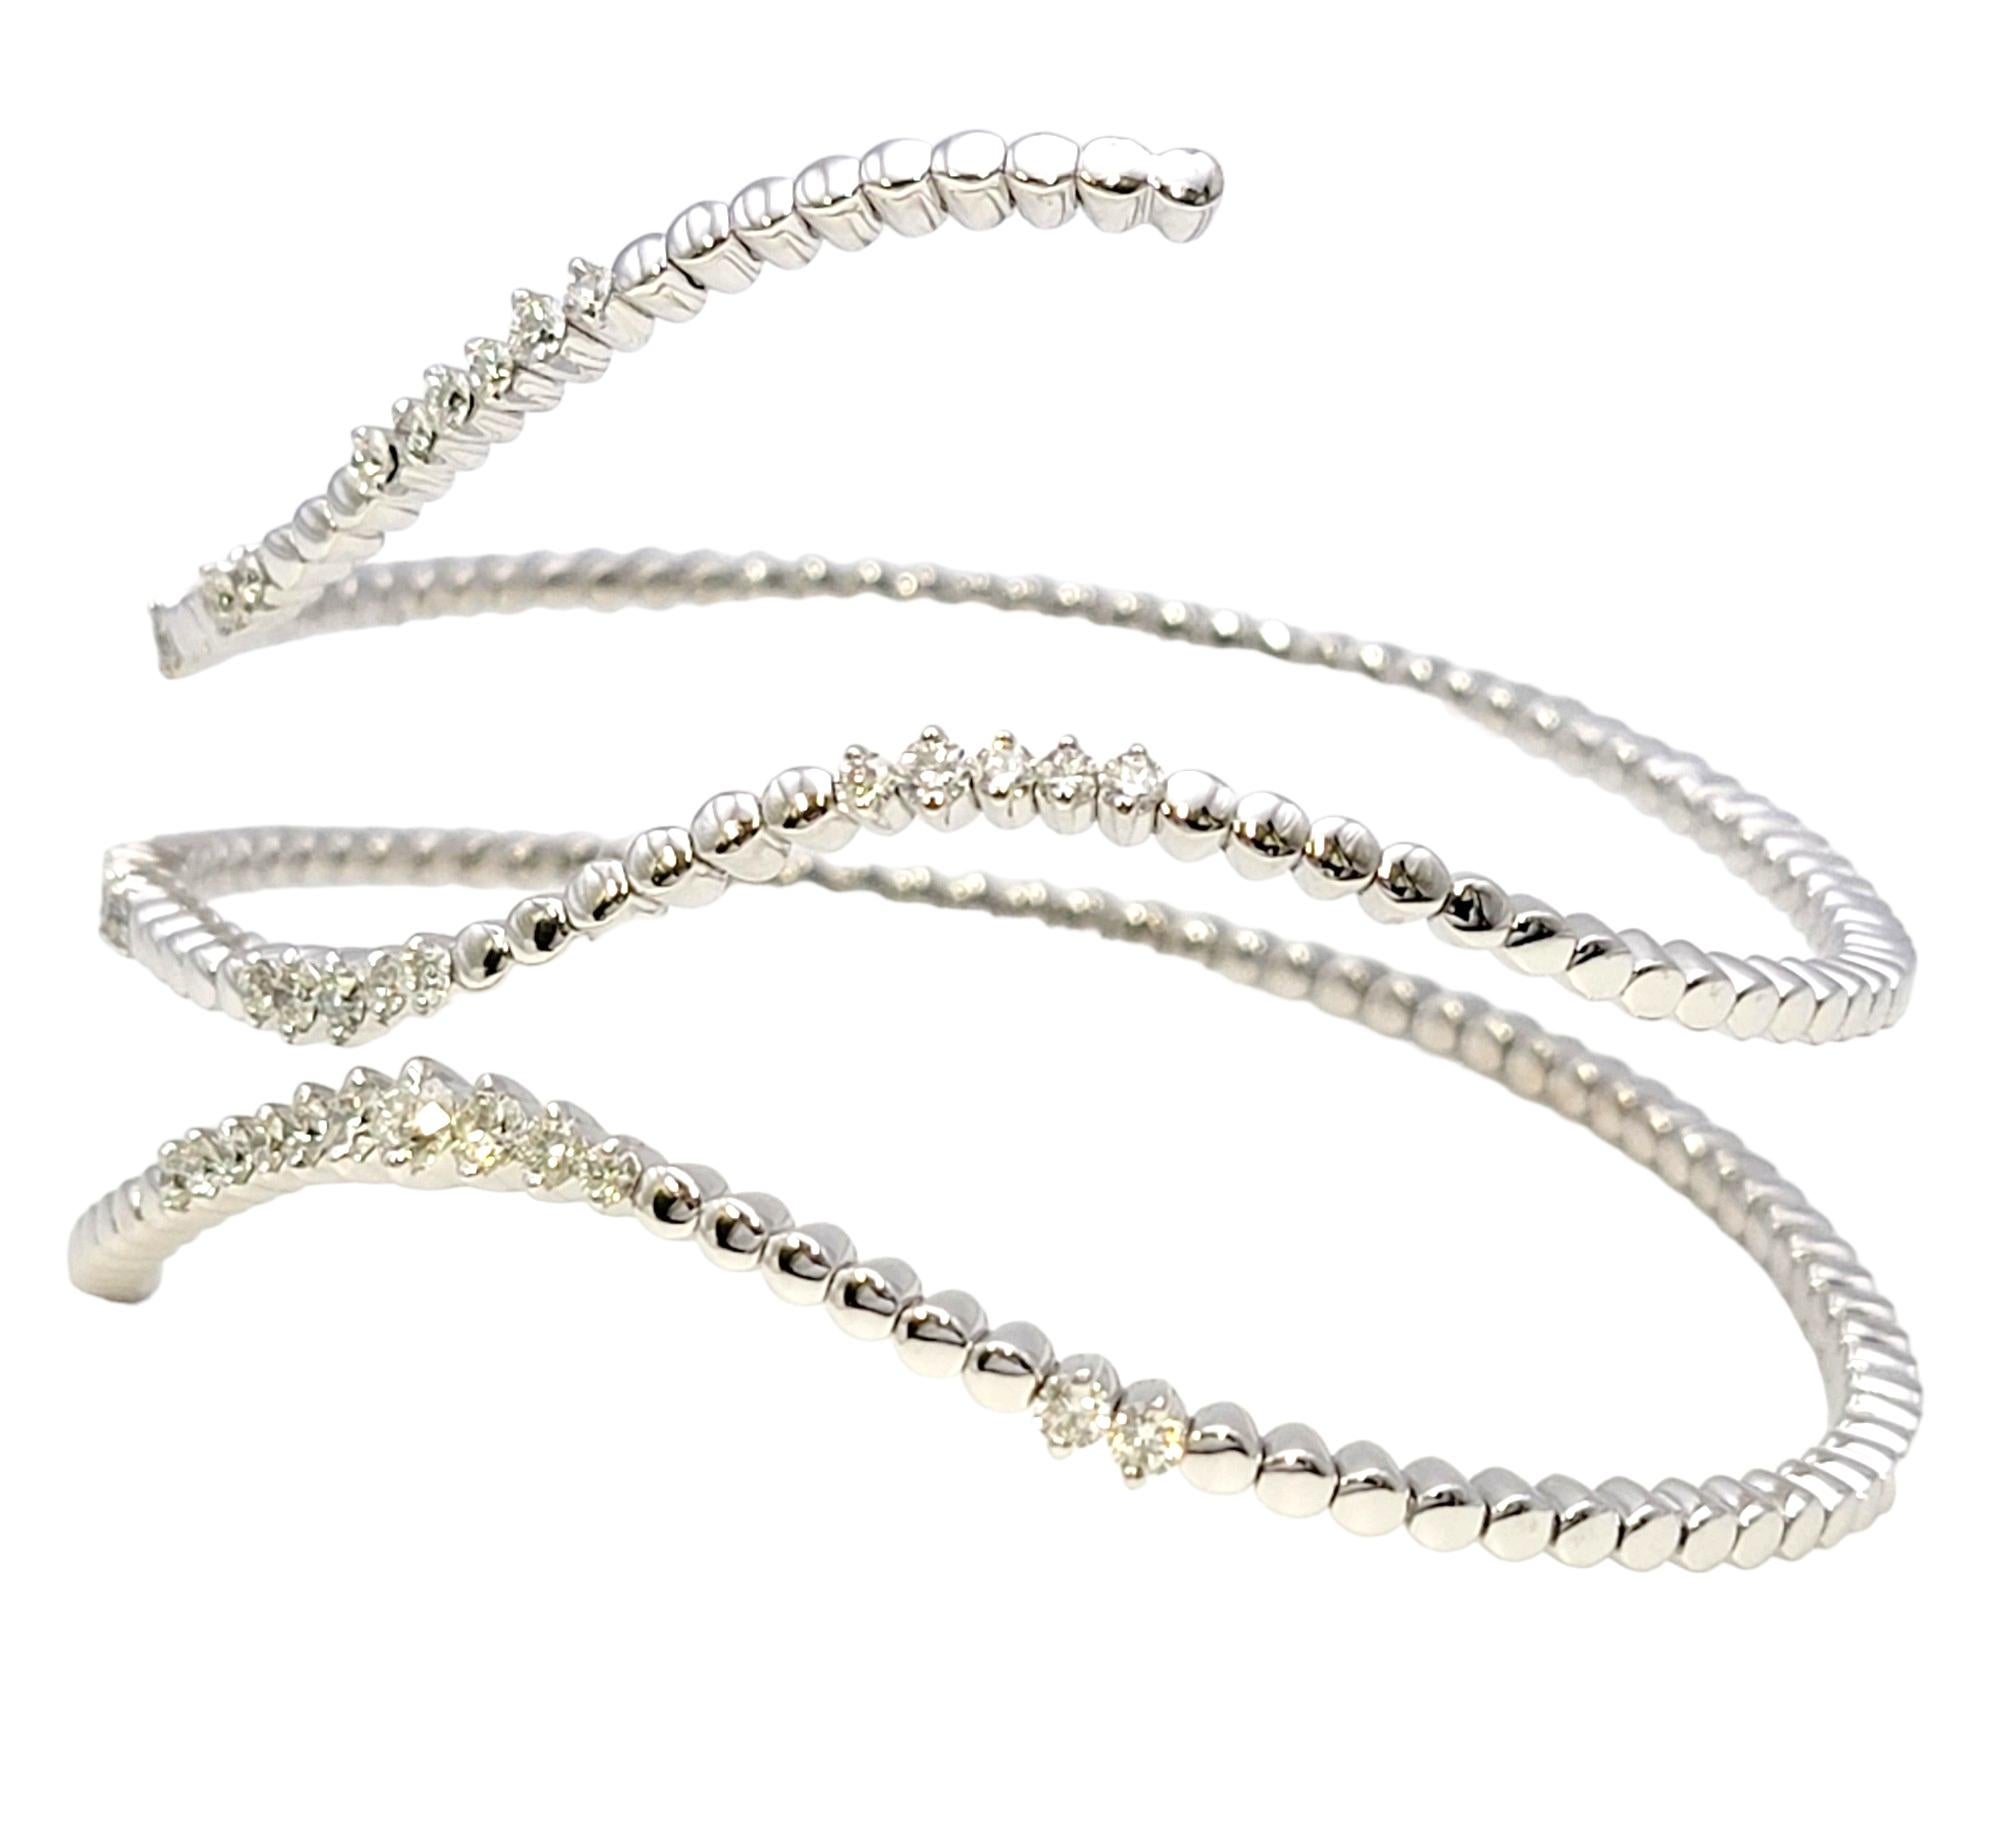 Erleben Sie die perfekte Mischung aus Raffinesse und Glamour mit dem Effy Pave Classica Diamant-Wickelarmband. Dieses exquisite Stück der renommierten Designerin Effy fängt die Essenz zeitloser Schönheit ein und präsentiert die Brillanz von